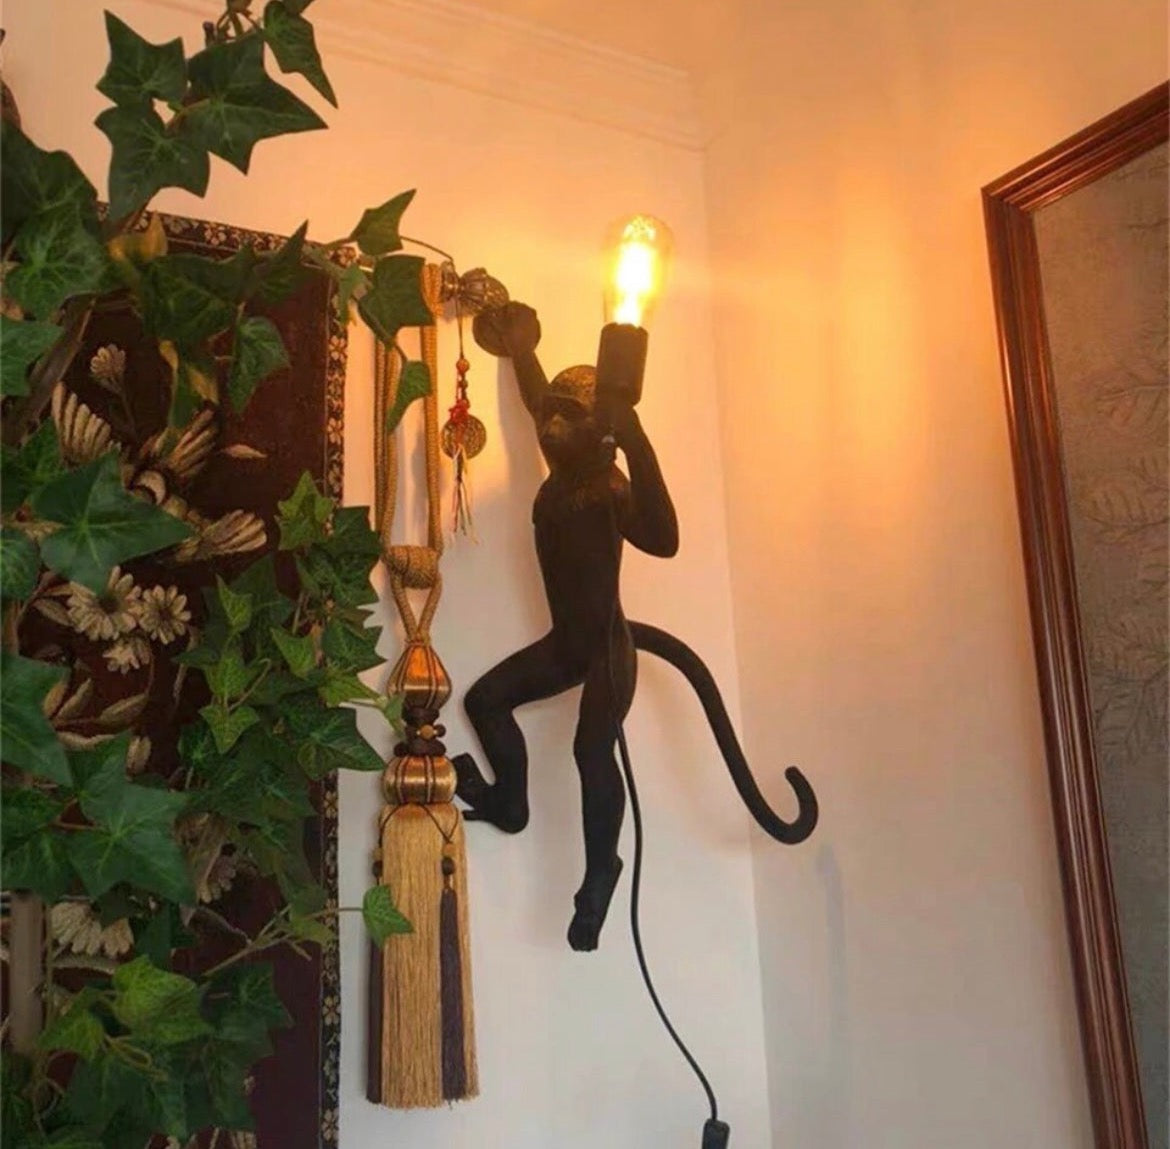 Hanging Monkey Wall Light